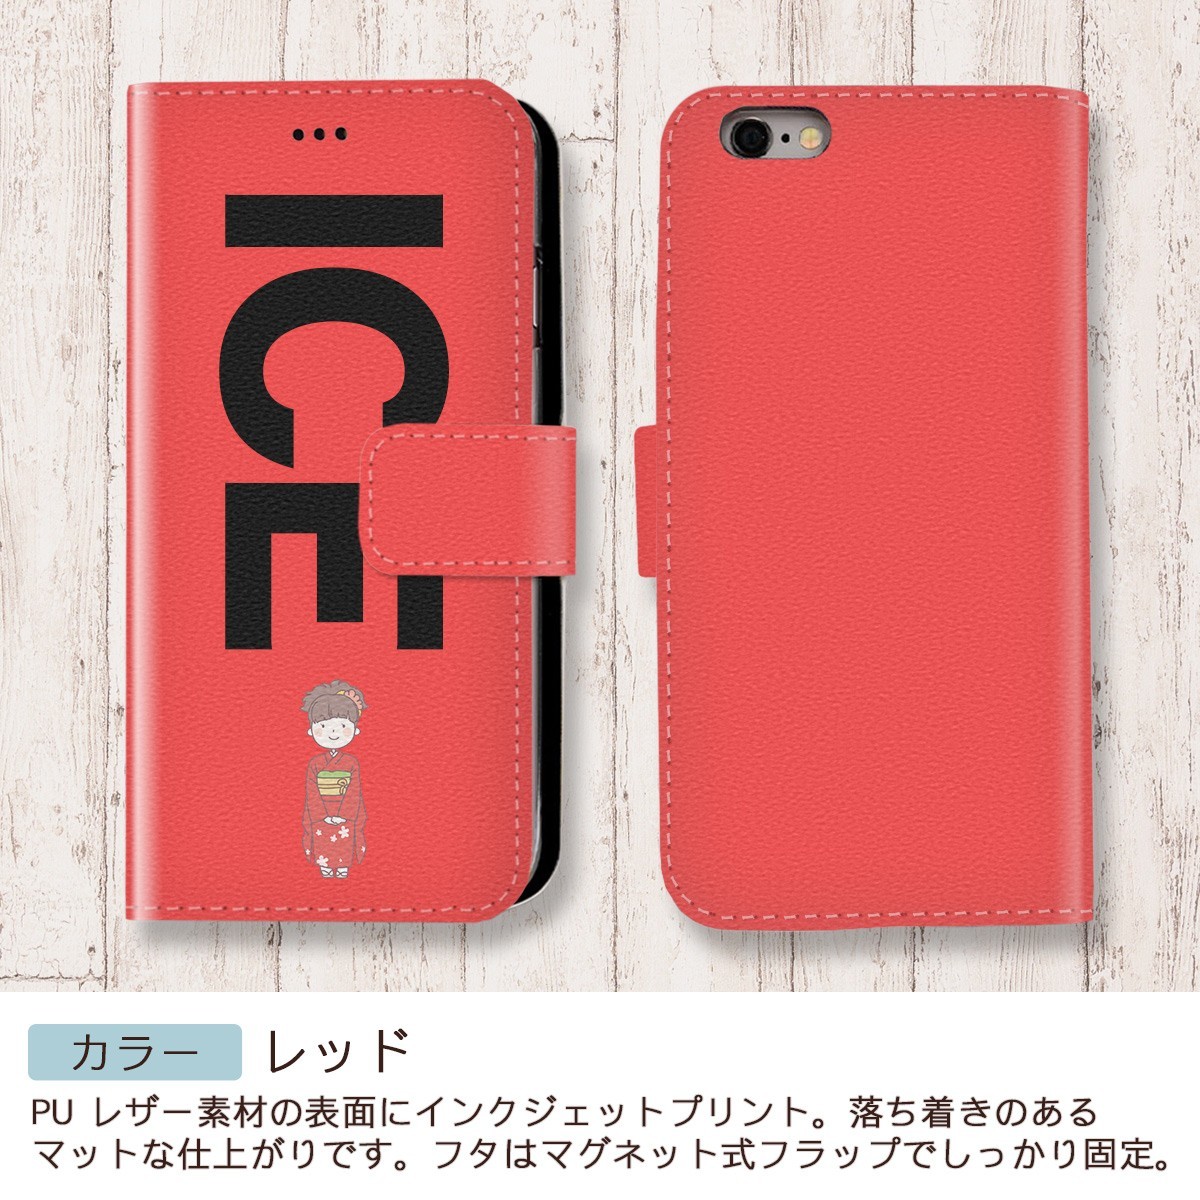 赤い着物 成人女性 おもしろ X XSケース ケース iPhone X iPhone XS ケース 手帳型 アイフォン かわいい カッコイイ メンズ レ_画像6